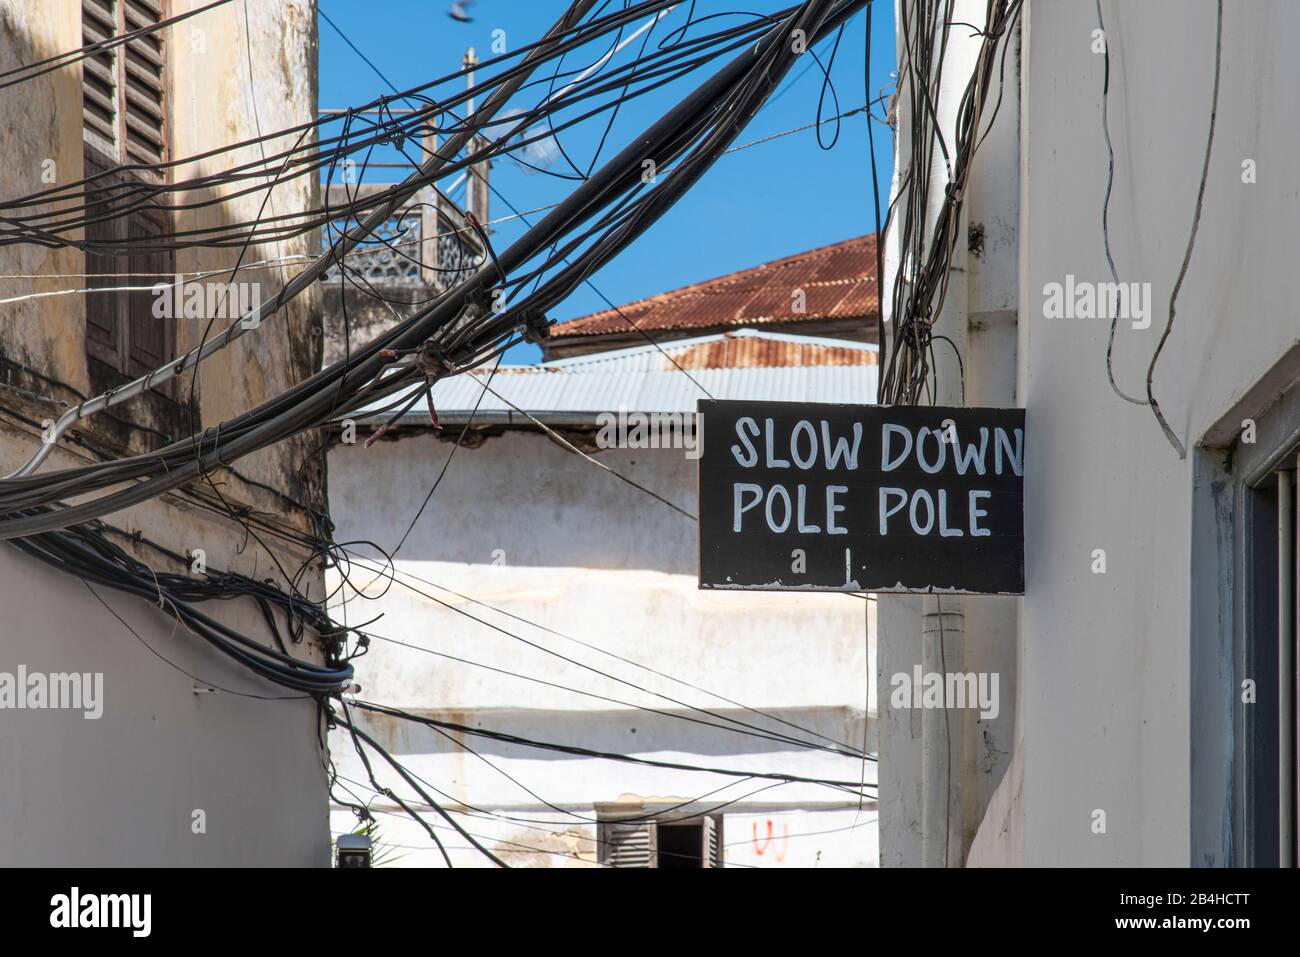 Destination Tanzanie, Ile De Zanzibar: Impressions De Stone Town. Les panneaux « Pole pole » ralentissent dans les rues. Banque D'Images